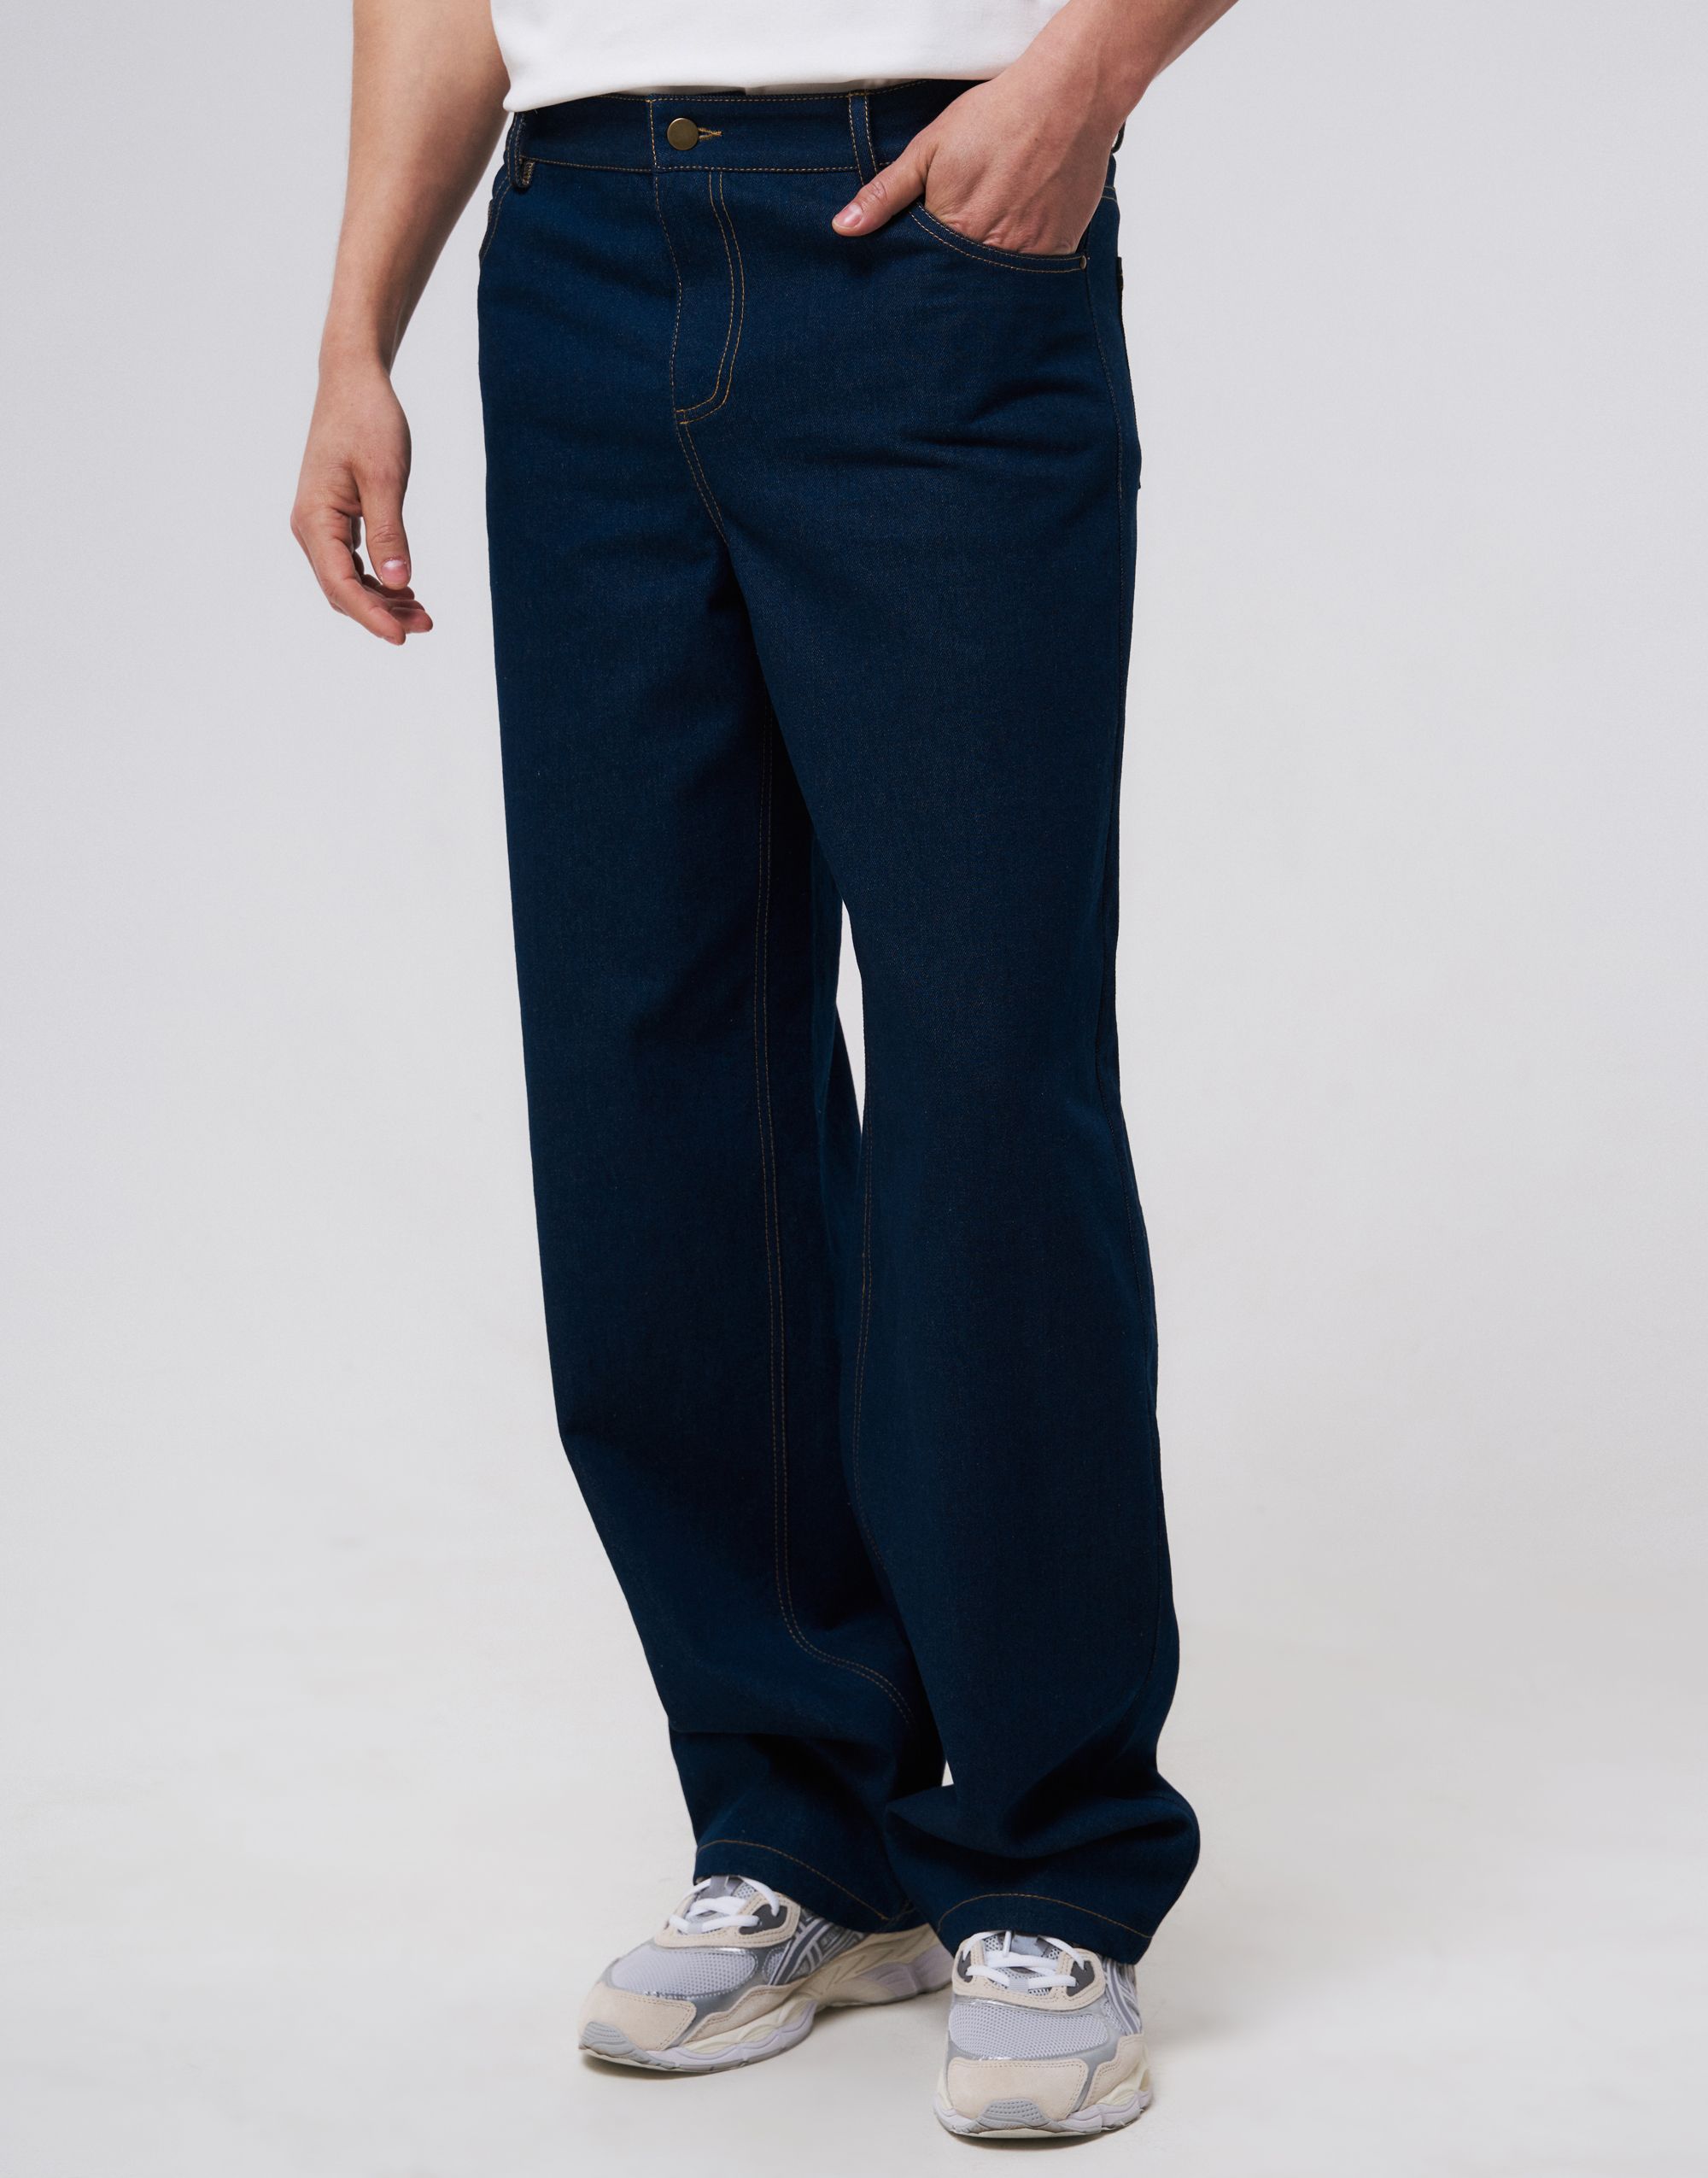 Men’s jeans, pattern №1112